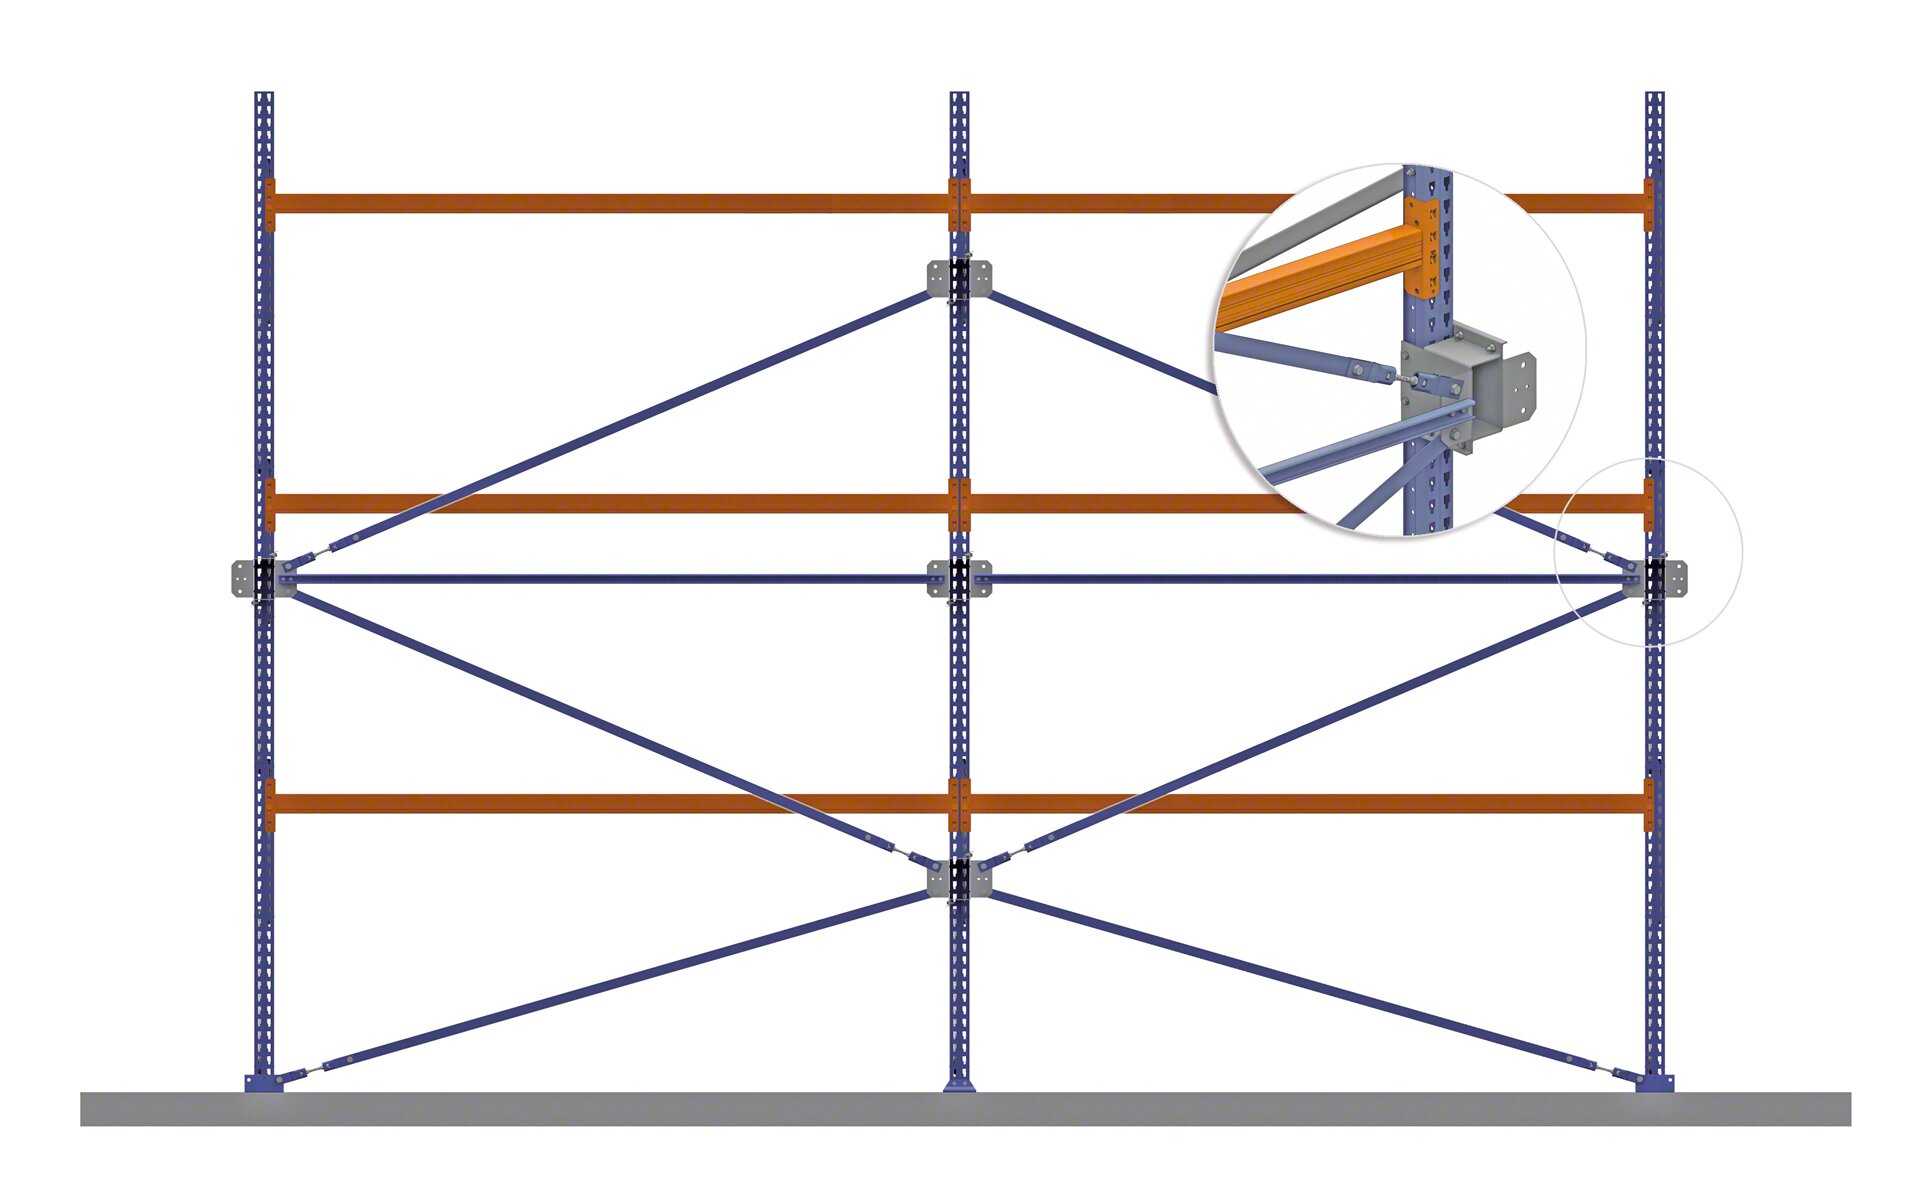 Braces reinforce the pallet rack’s structure